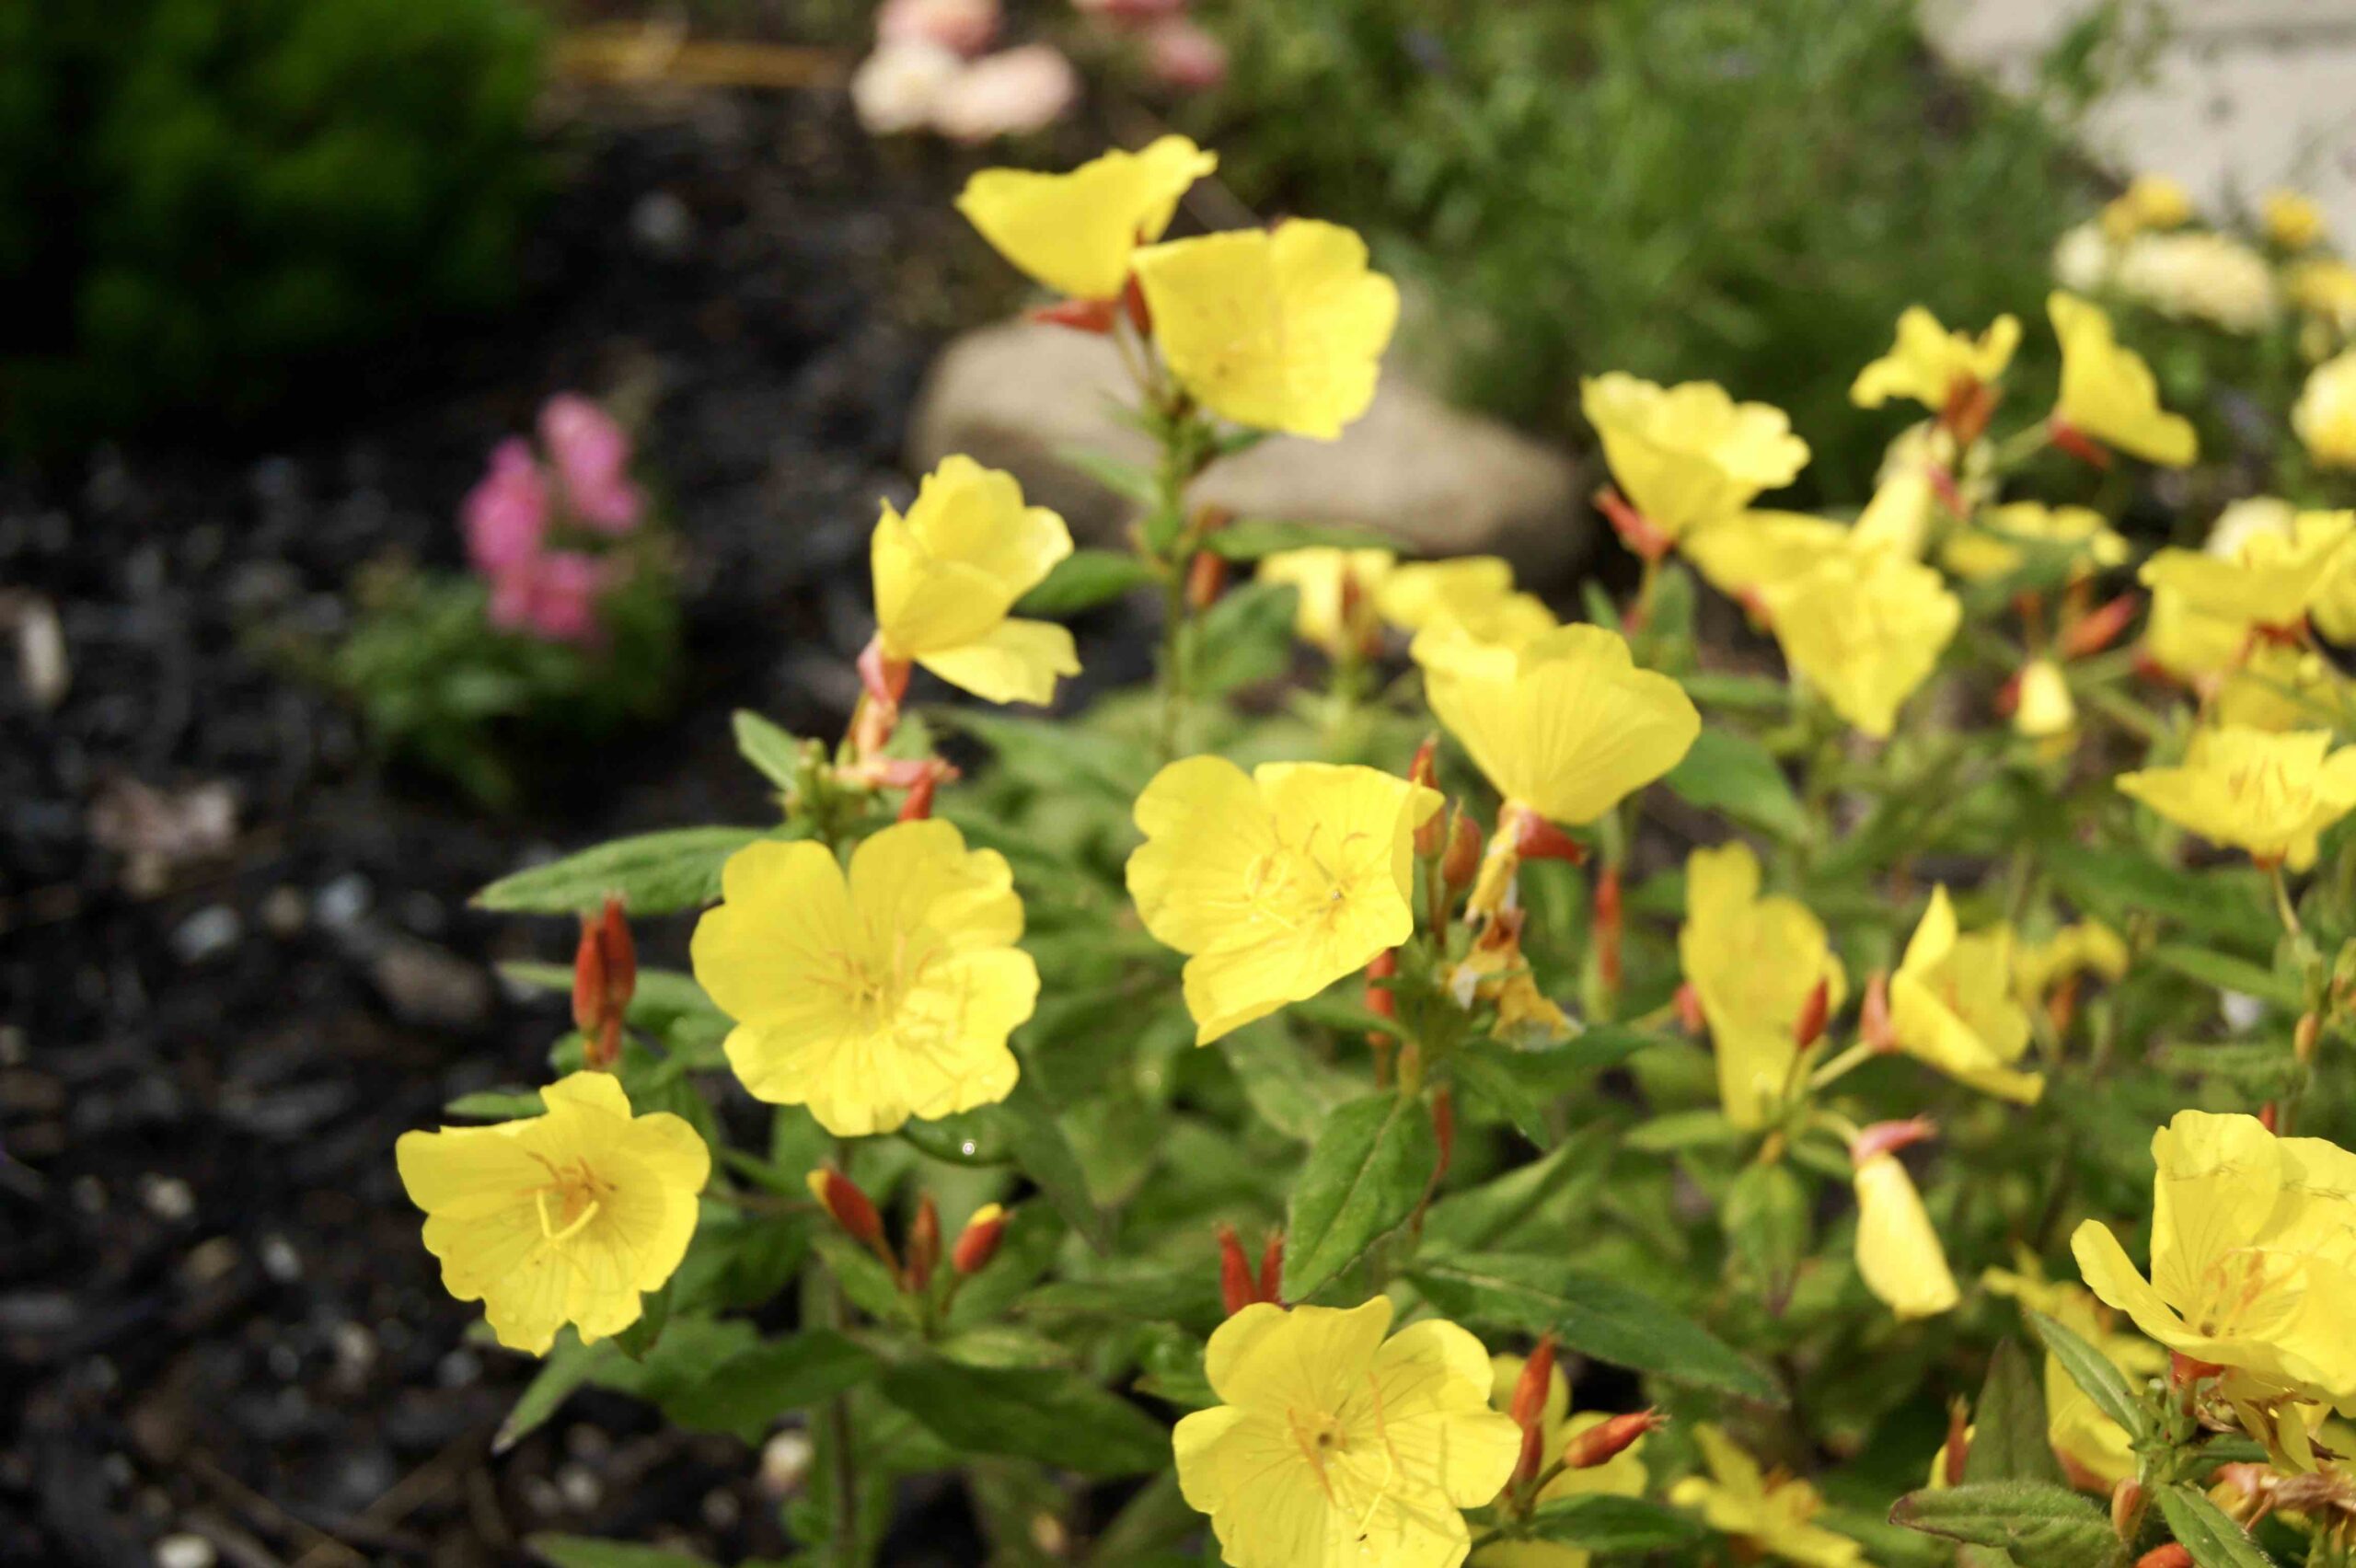 Close up of yellow perennials